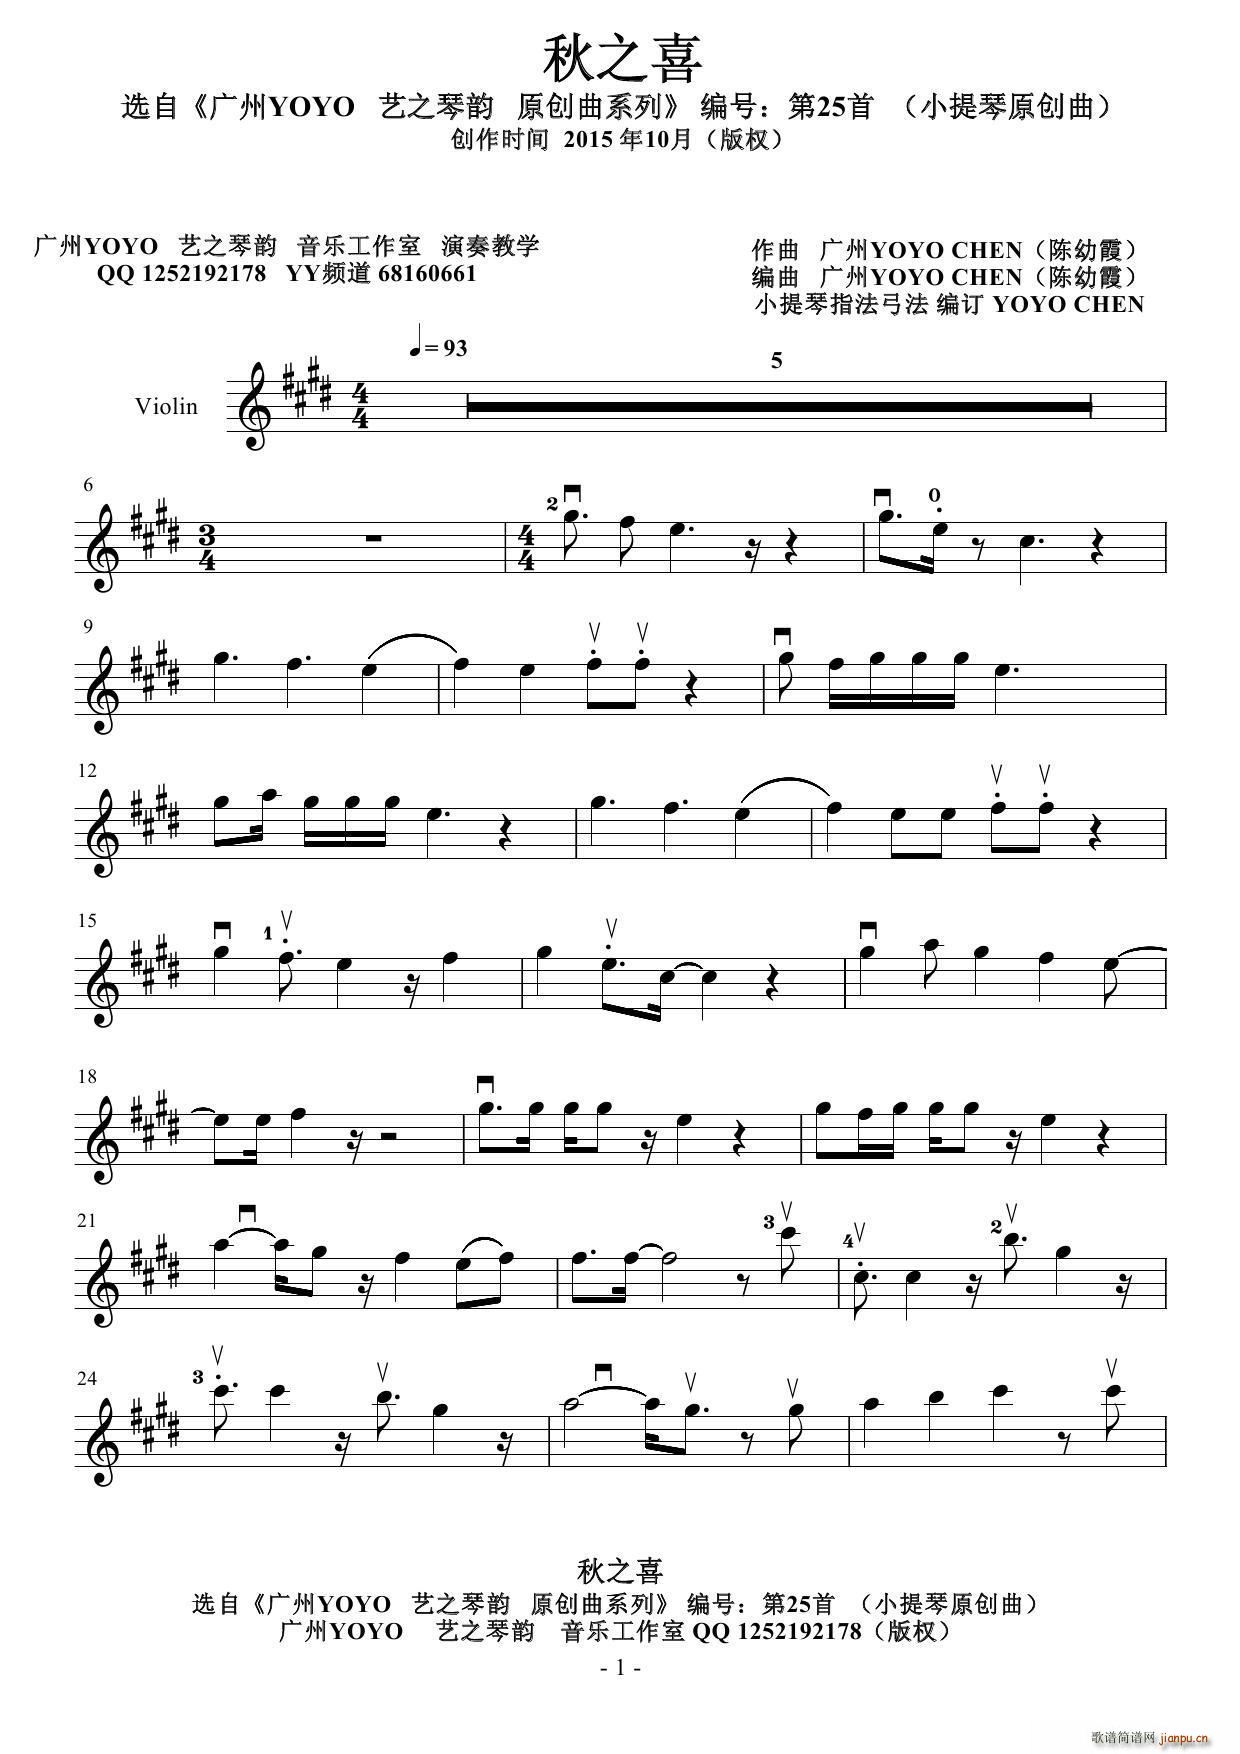 秋之喜 廣州YOYO作曲原創小提琴曲(小提琴譜)1